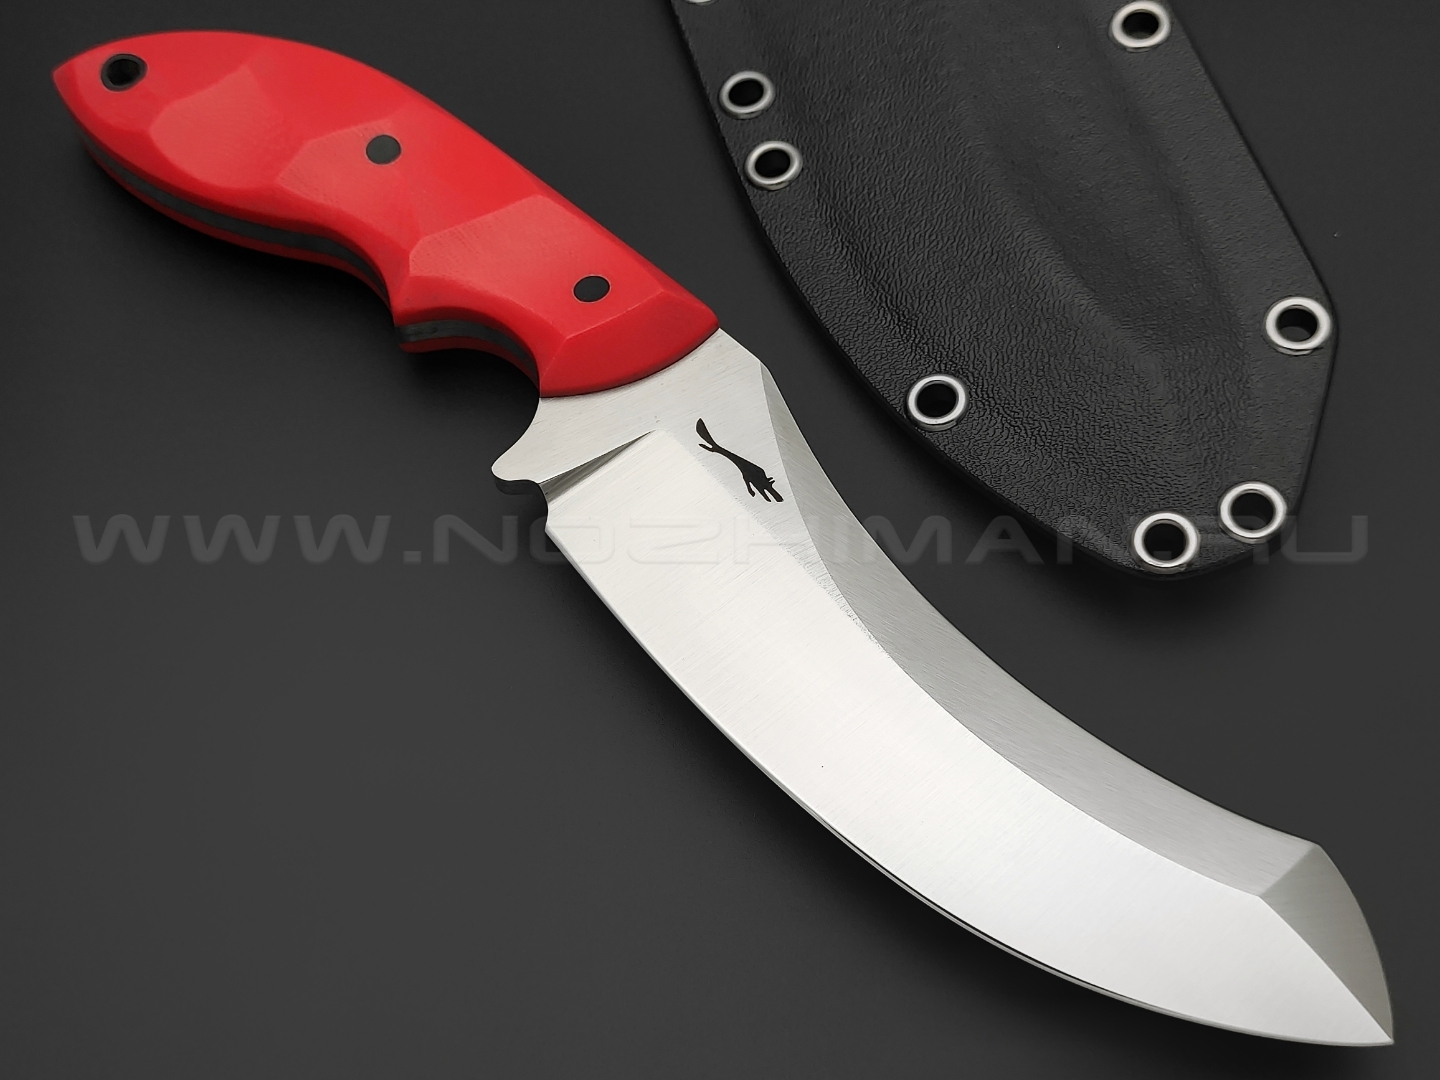 Волчий Век нож Кондрат 12 сталь N690 WA satin, рукоять G10 red